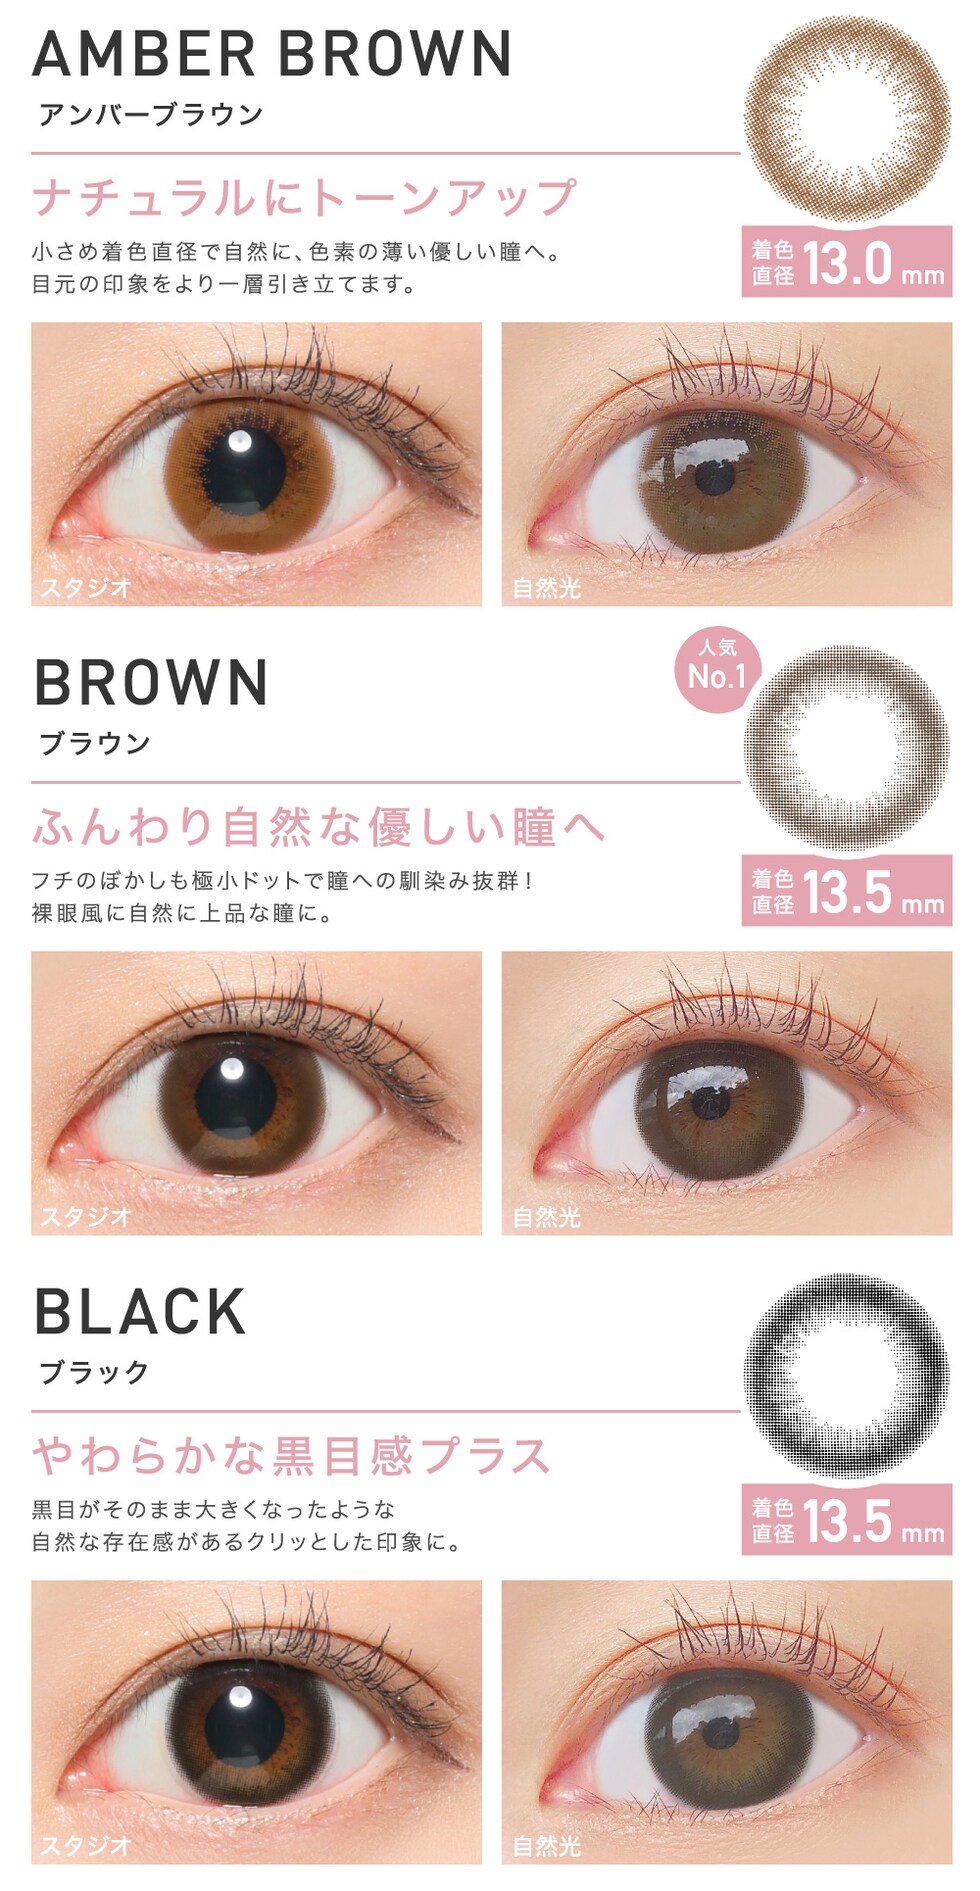 AMBER BROWN アンバーブラウン ナチュラルにトーンアップ/BROWN ブラウン ふんわり自然な優しい瞳へ/BLACK ブラック やわらかな黒目感プラス